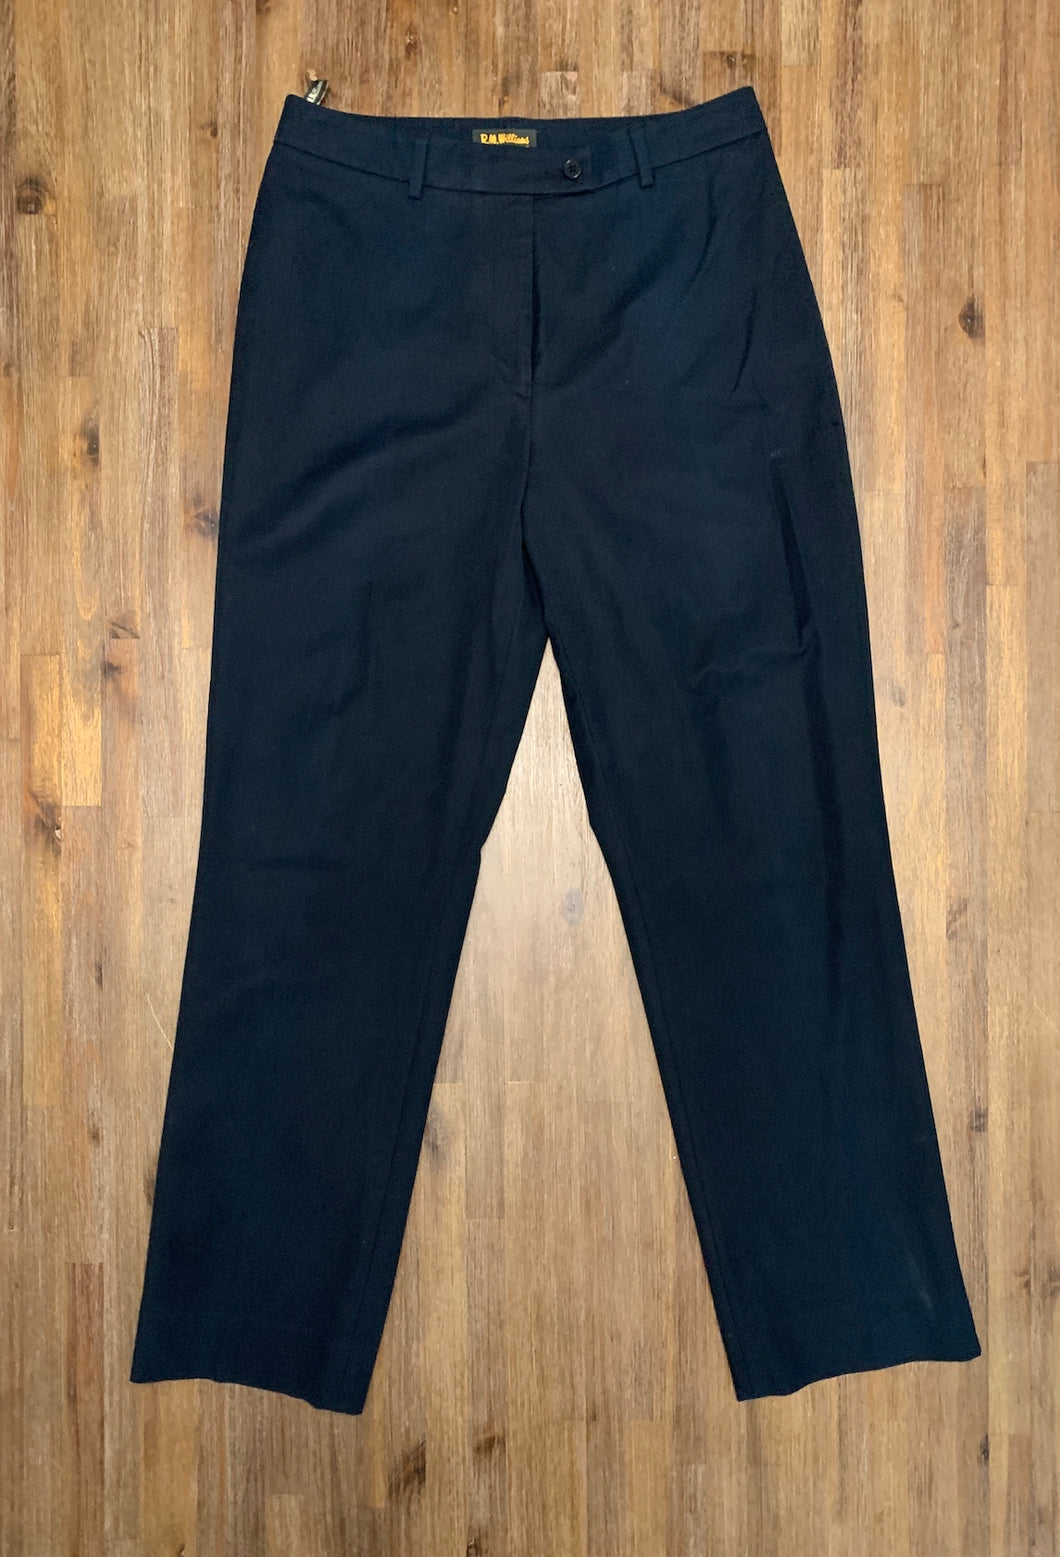 R.M WILLIAMS Vintage Size 10 Black Pants Women's JU132